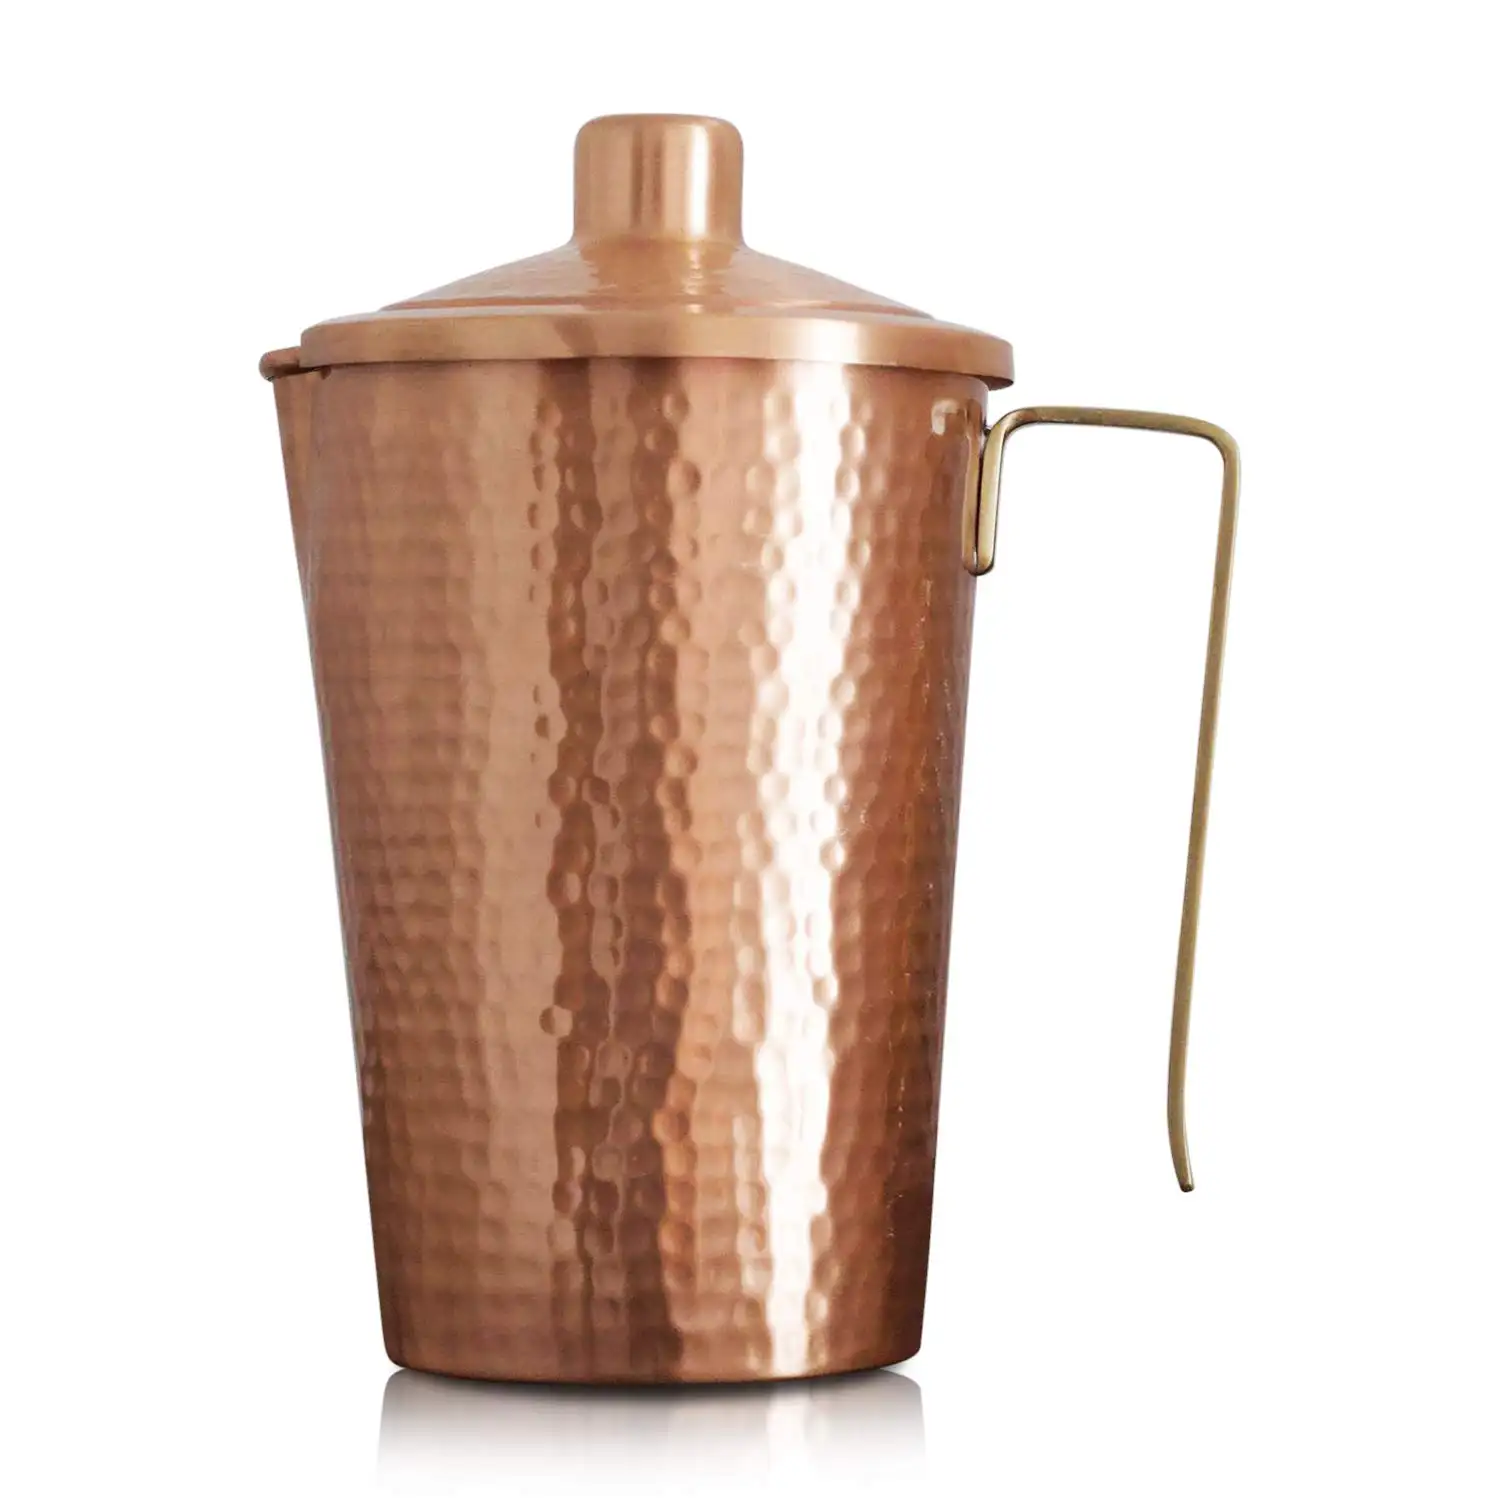 Jarras de producción reciente Diseño de moda Hotel Home Drink Ware Jarras Cobre con jarras de acabado dorado